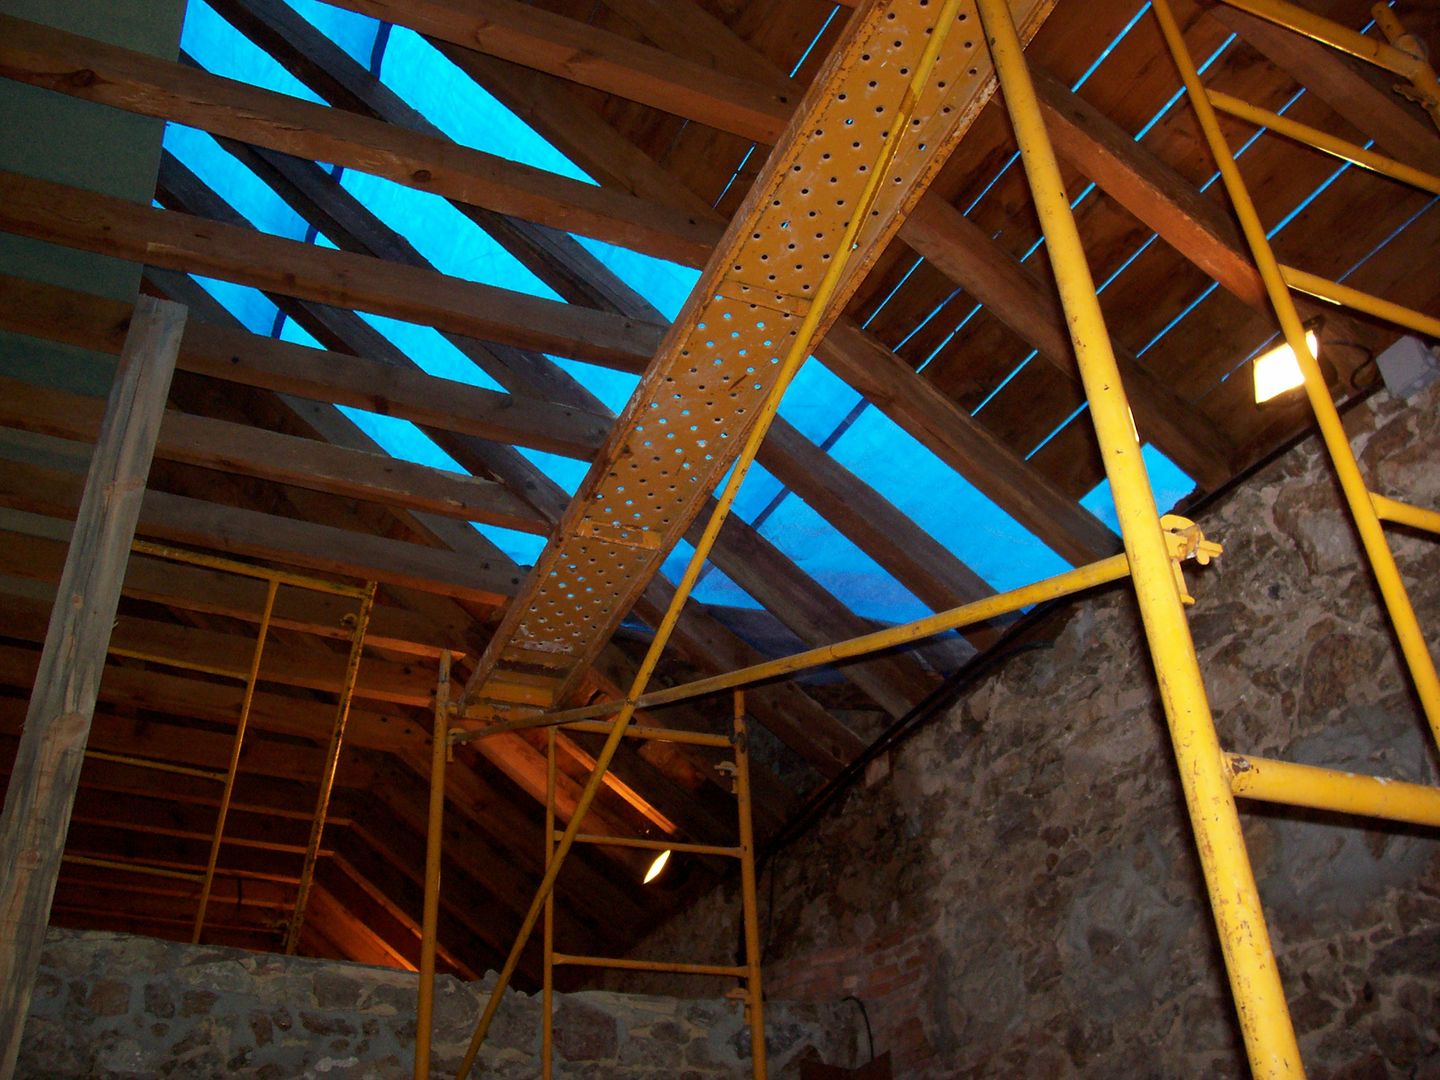 Reparación de tejado de pizarra en Segovia, Recasa, reformas y rehabilitaciones en Marbella Recasa, reformas y rehabilitaciones en Marbella Крыши